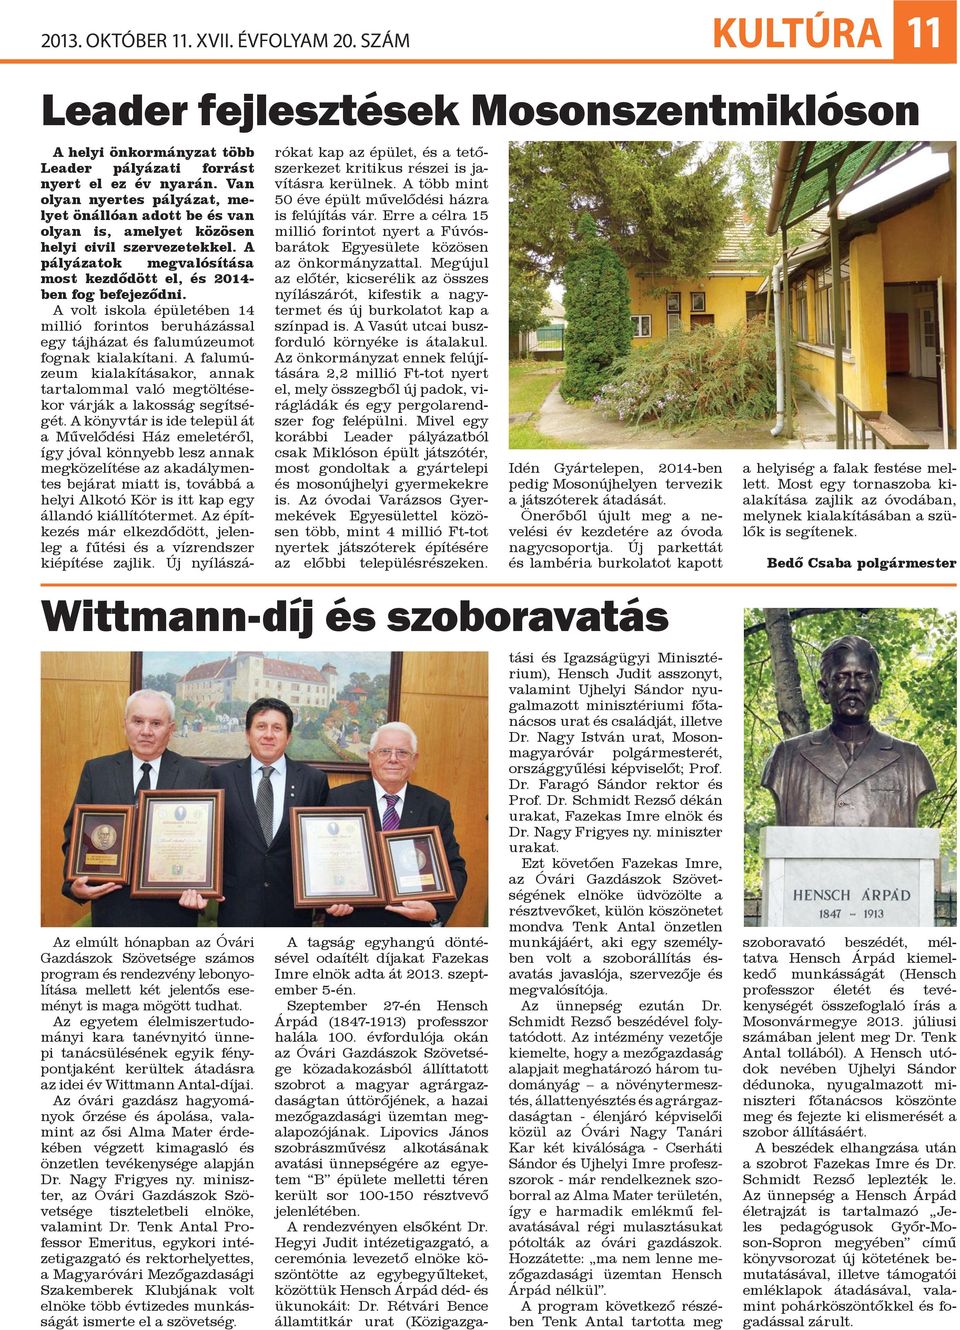 Az egyetem élelmiszertudományi kara tanévnyitó ünnepi tanácsülésének egyik fénypontjaként kerültek átadásra az idei év Wittmann Antal-díjai.